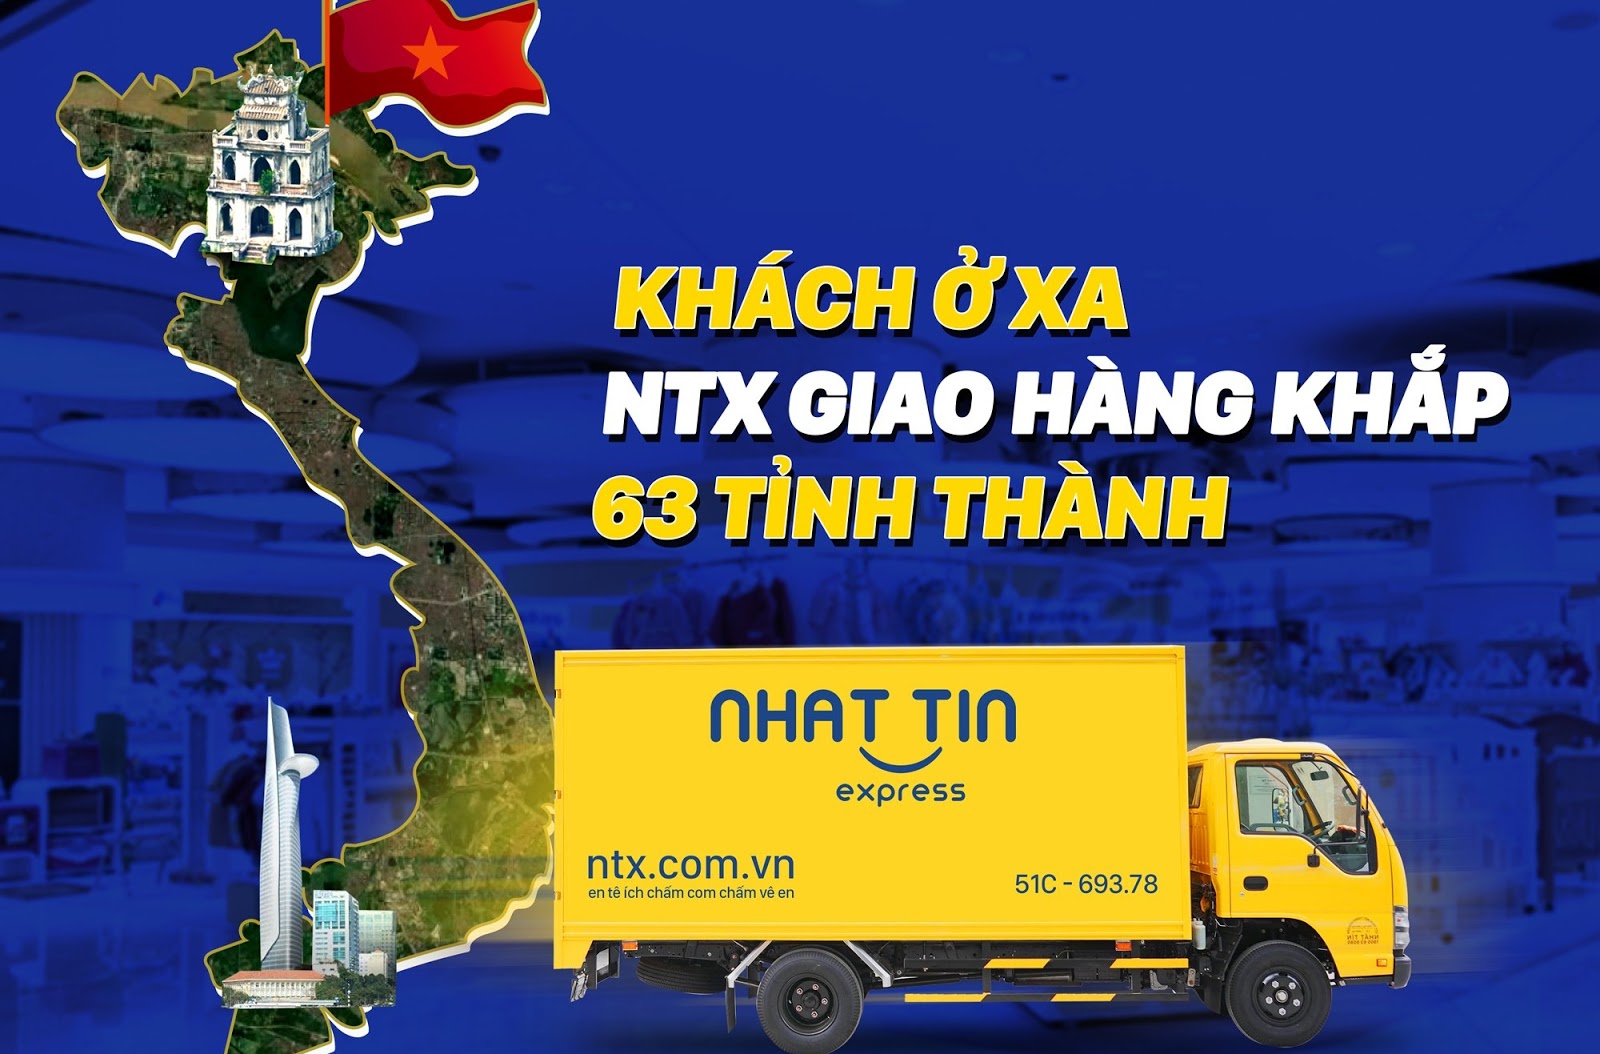 Giao hàng online NTX - Nhất Tín Express với dịch vụ giao hàng bằng xe máy và đa dạng phương tiện